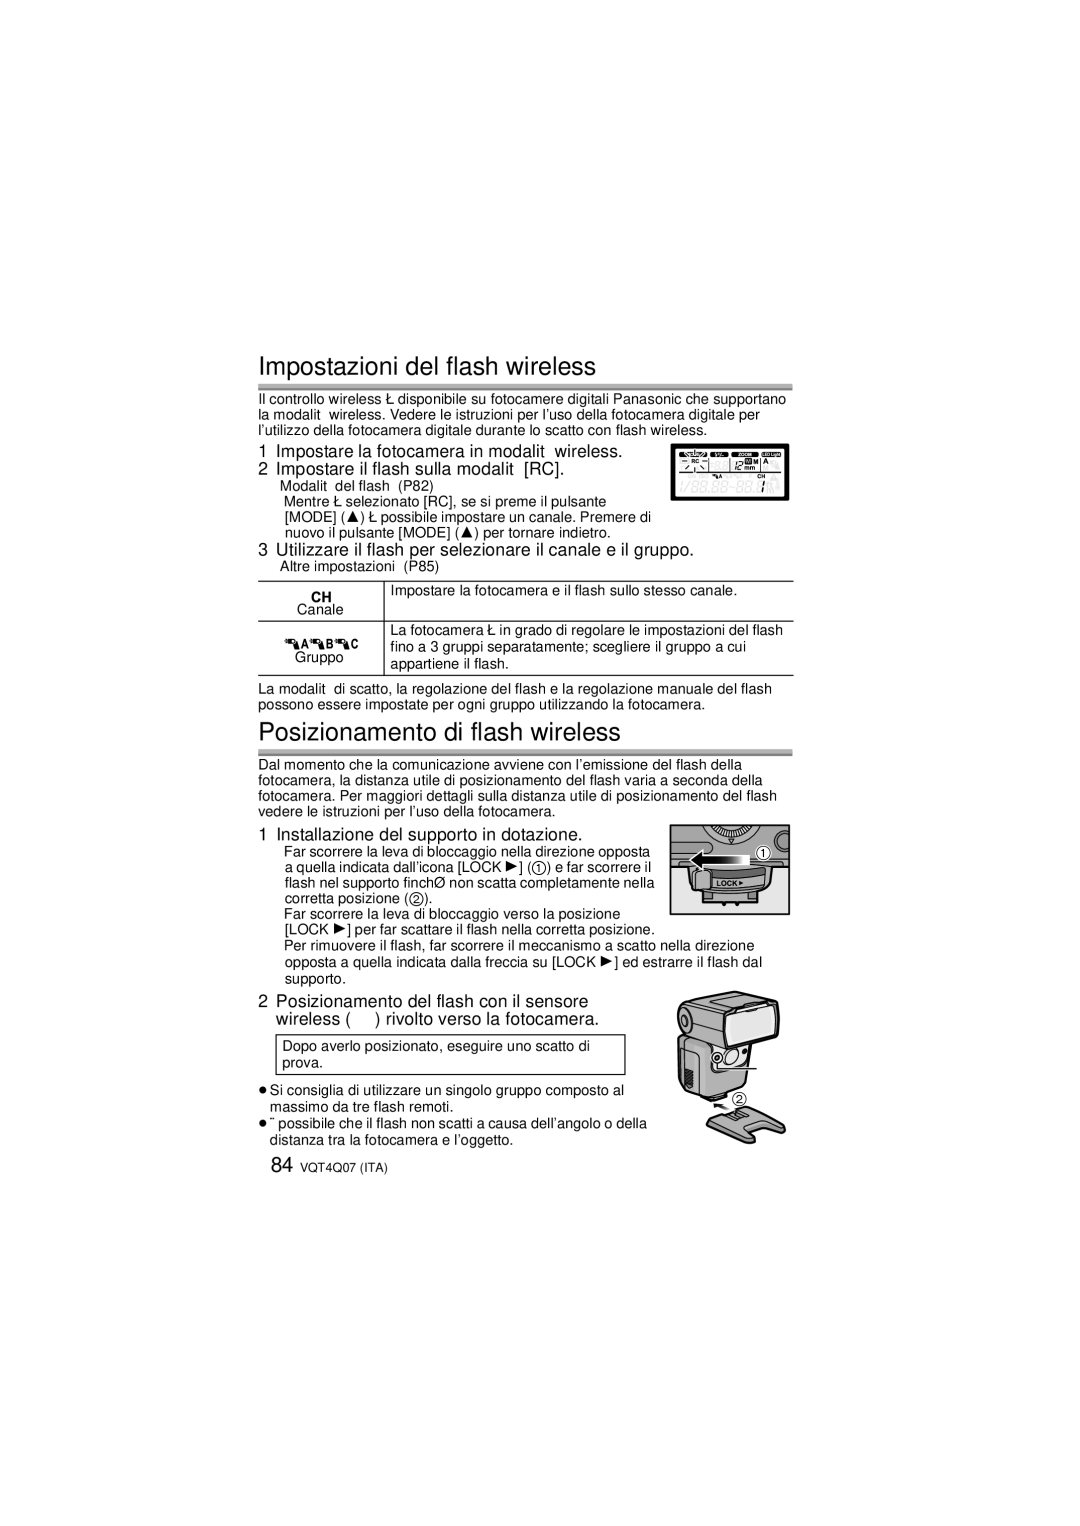 Panasonic DMW-FL360L operating instructions Impostazioni del flash wireless, Posizionamento di flash wireless, Canale 